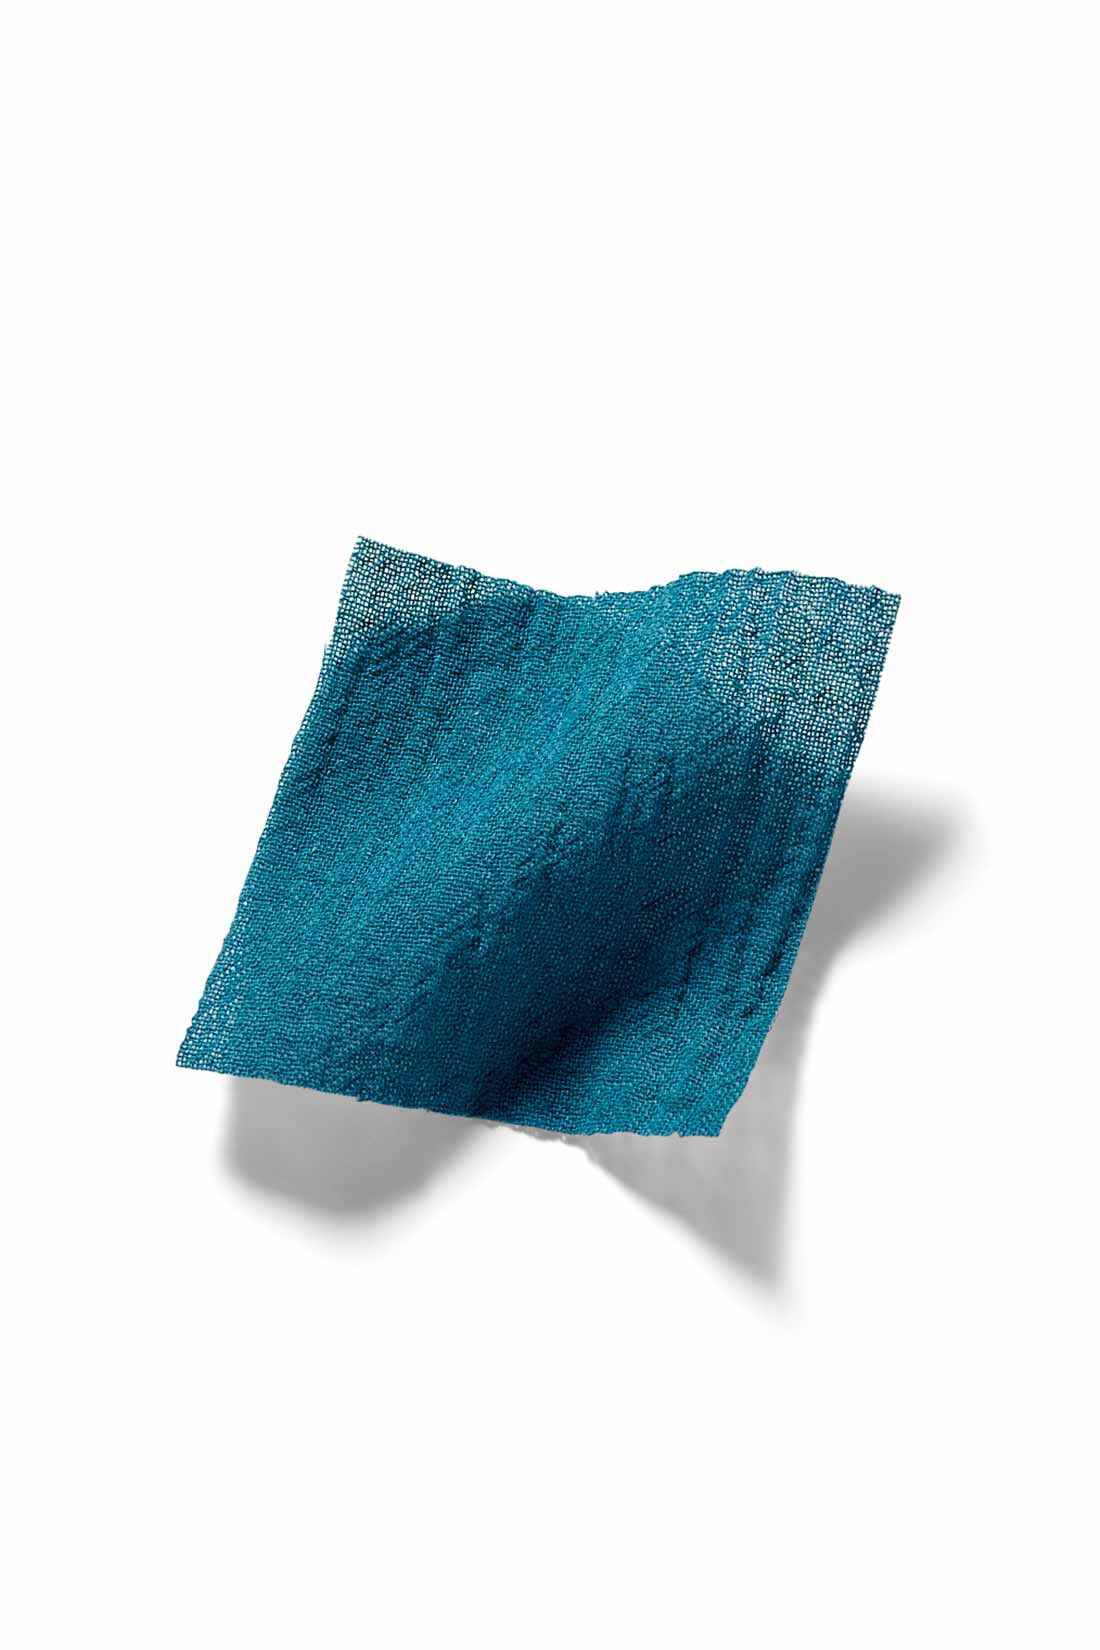 IEDIT[イディット]　楊柳（ようりゅう）コットン素材のティアードロングブラウス〈ブルーグリーン〉|夏の素肌にうれしい綿100％。今年らしいほんのり透け感と表面にシボ感のある薄手の楊柳素材を使用。